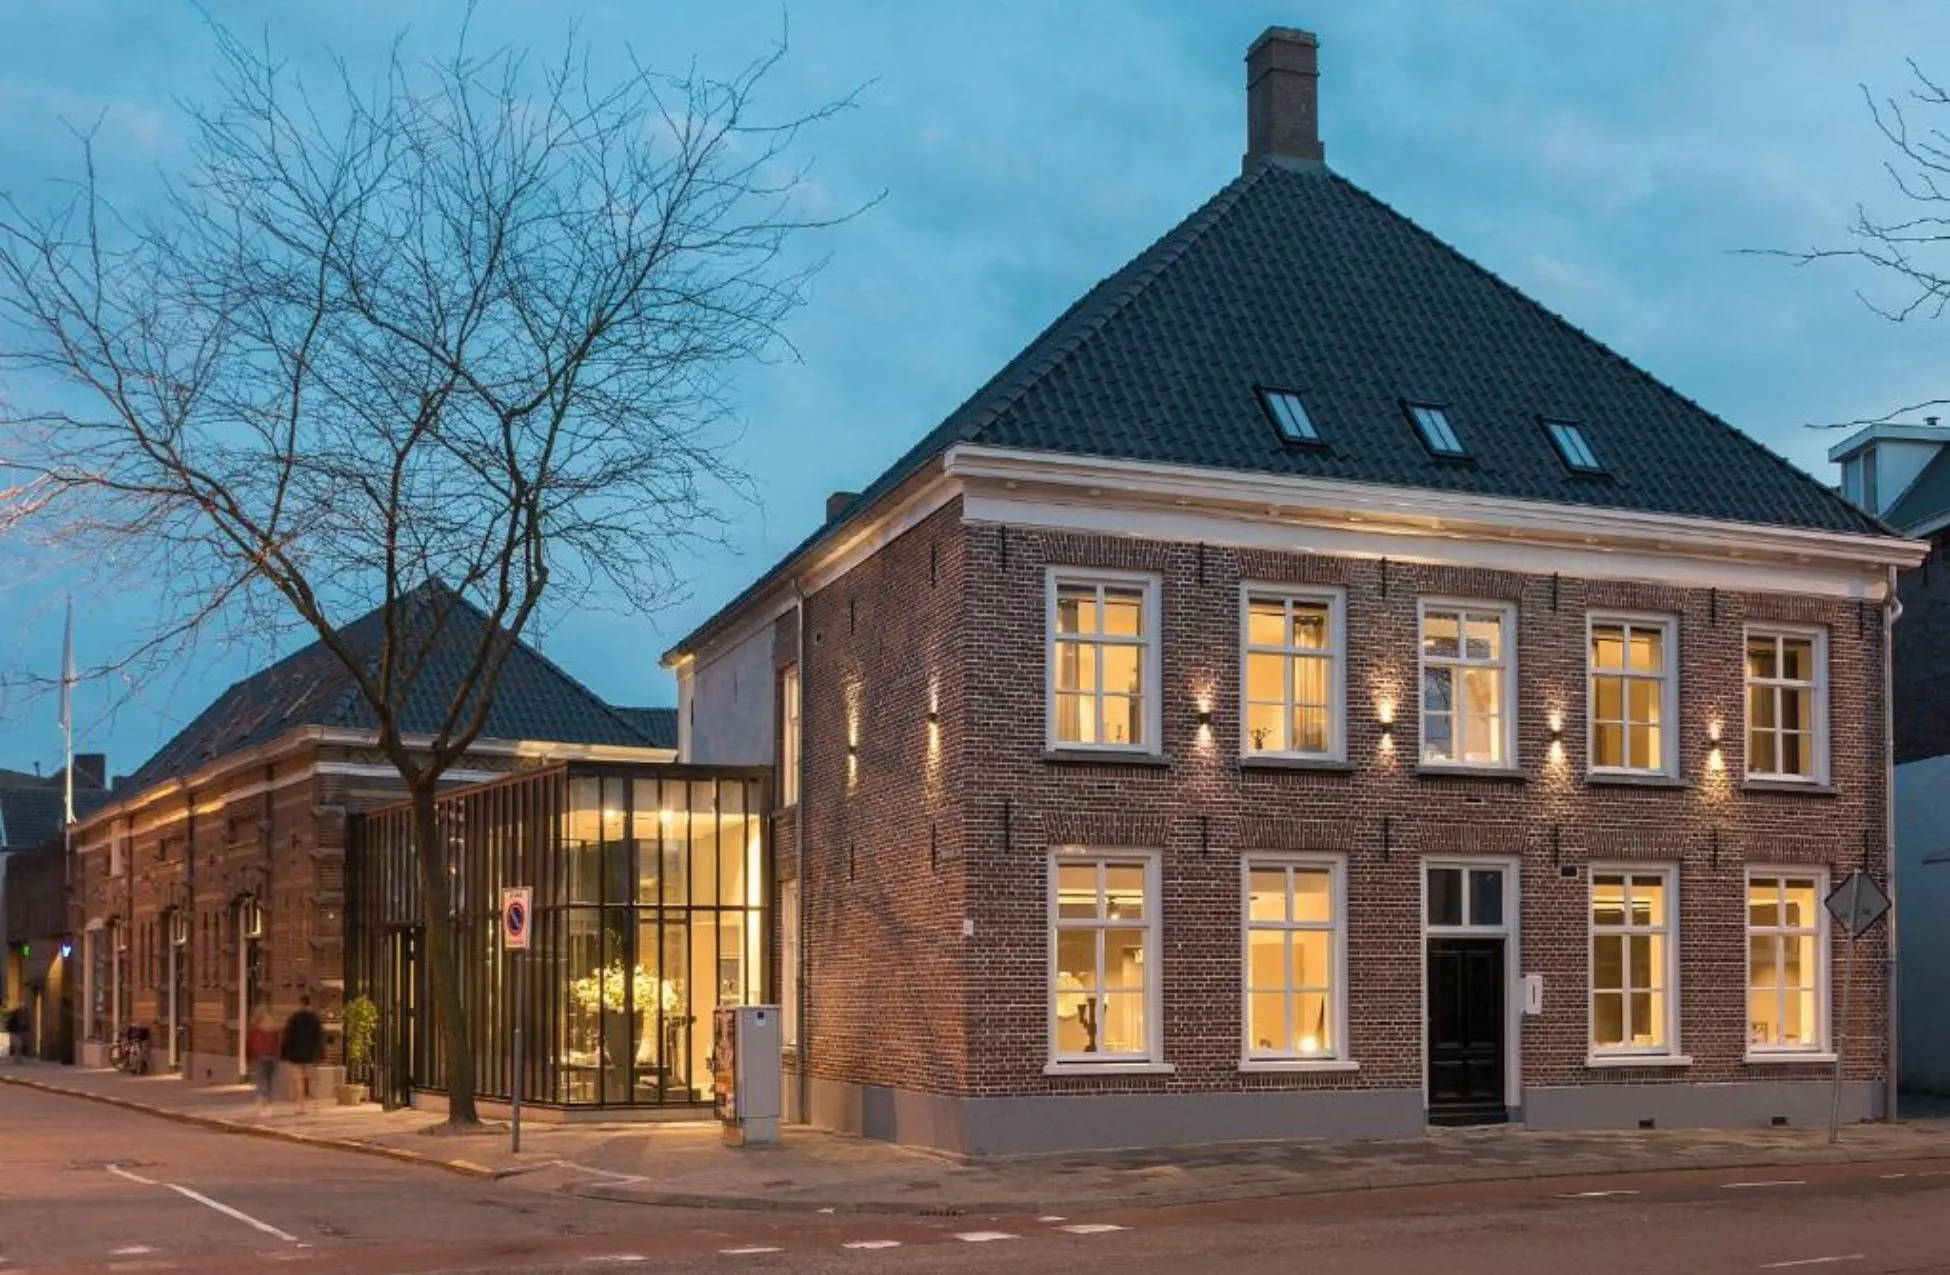 Kazerne - Best Hotels In Eindhoven